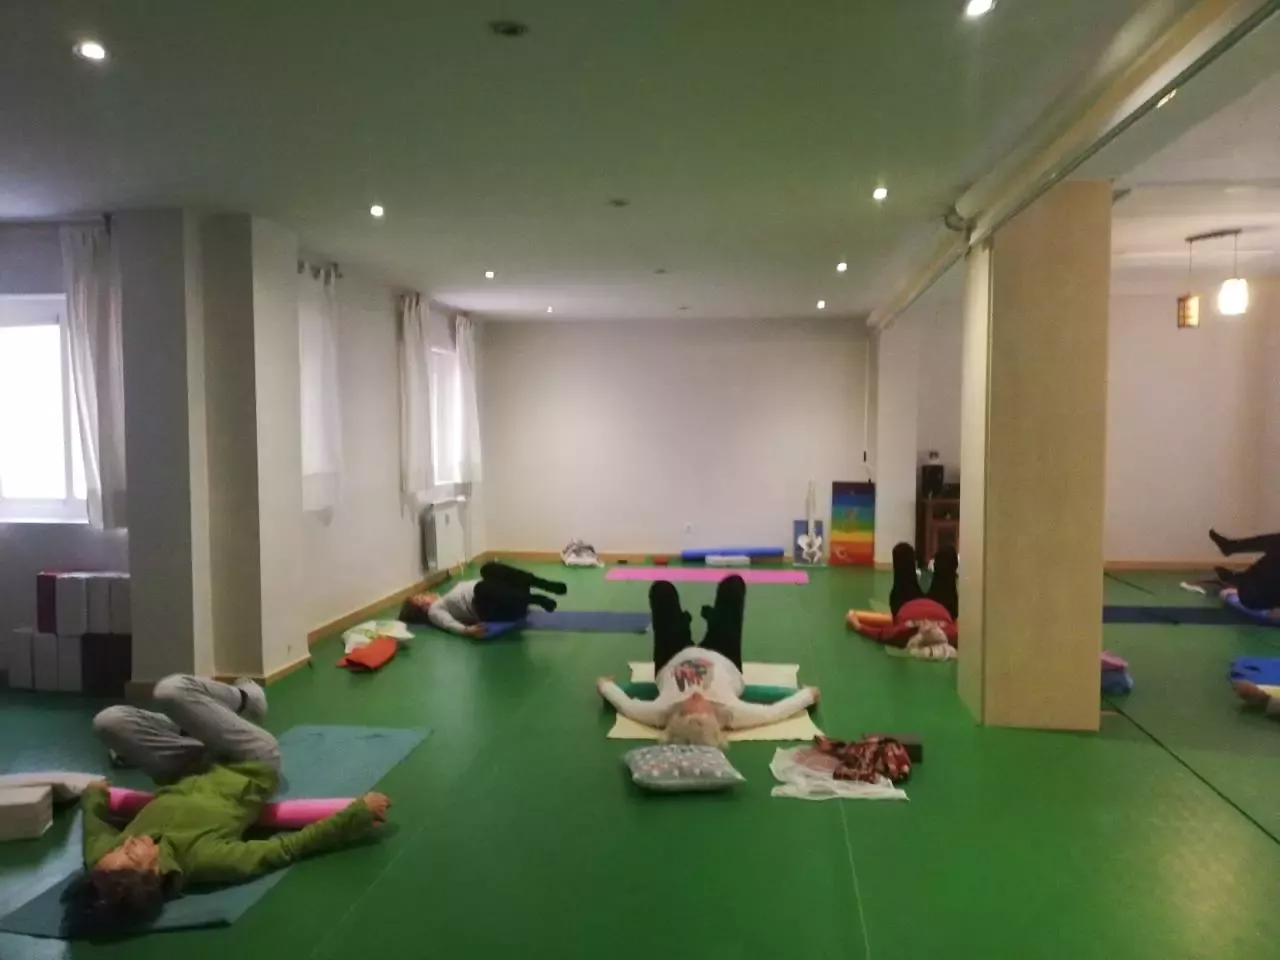 2. Dipawaly, Centro de Yoga  -  Pilates